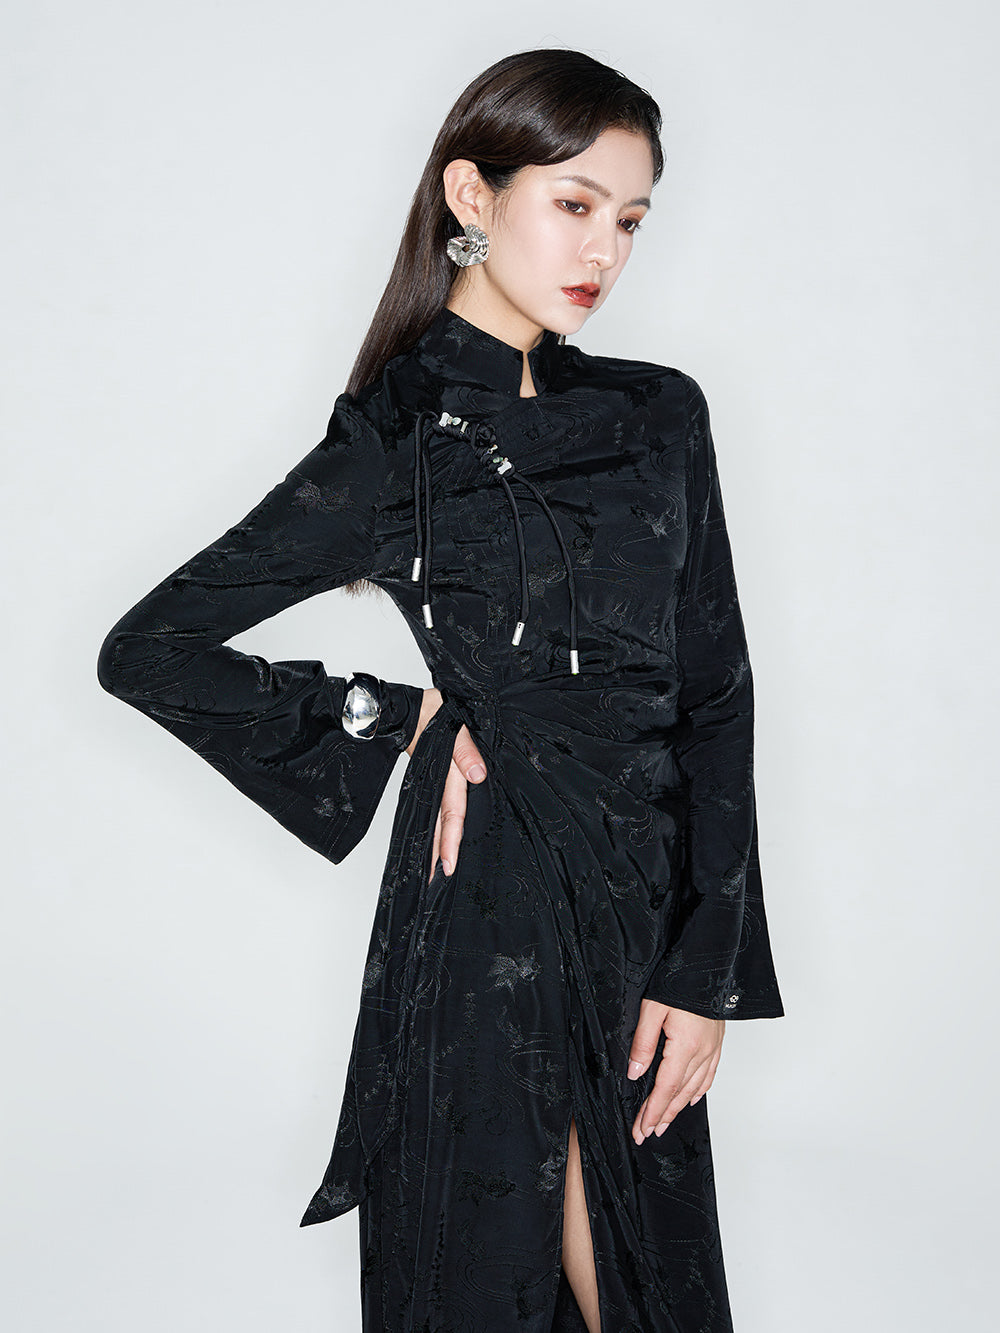 Linglong "Joyful Phoenix" - New Chinese-Style Jacquard High-Slit Qipao Dress